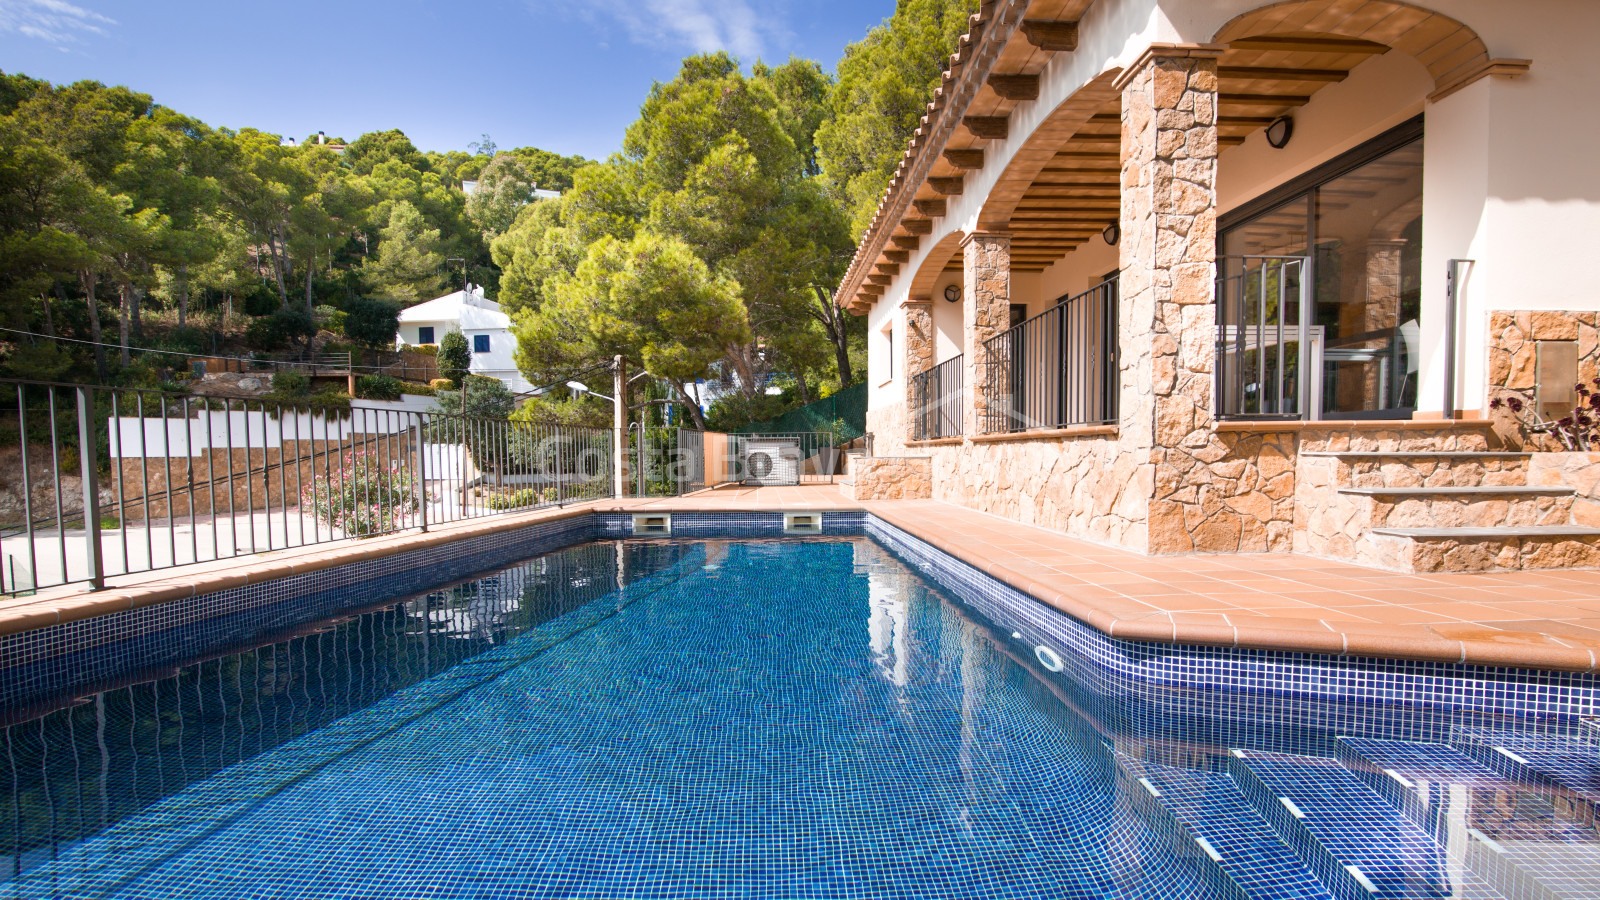 Casa amb piscina en venda a Tamariu, a només 5 minuts a peu de la cala d'Aigua Xelida